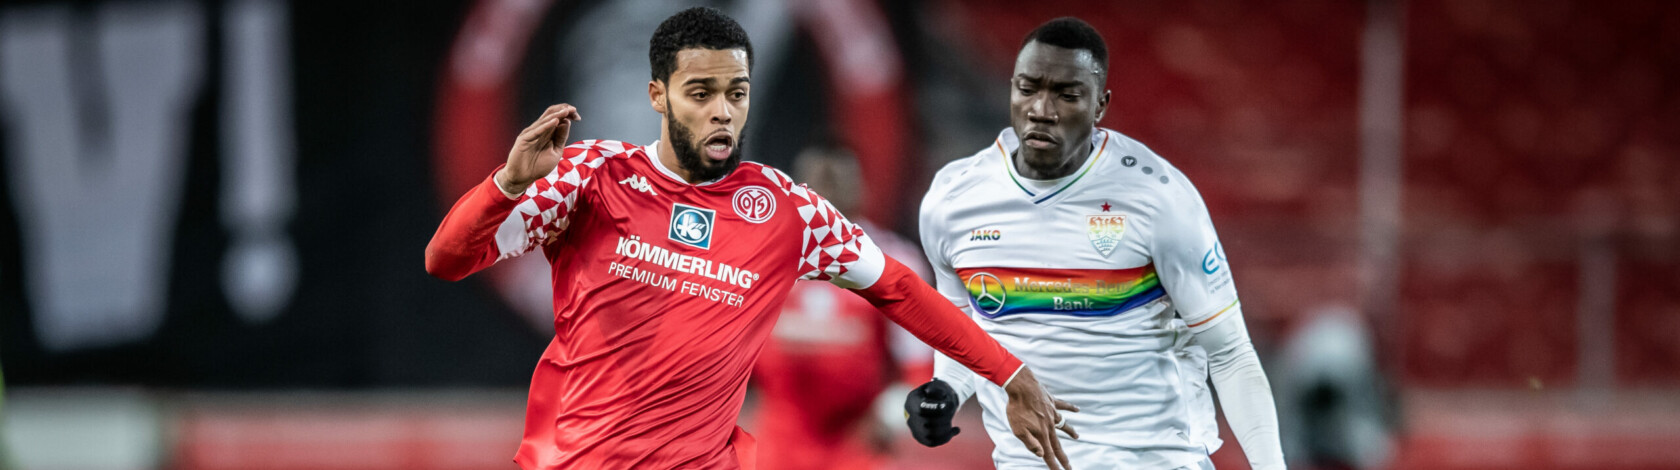 VfB Stuttgart v 1. FSV Mainz 05 &#8211; Bundesliga for DFL